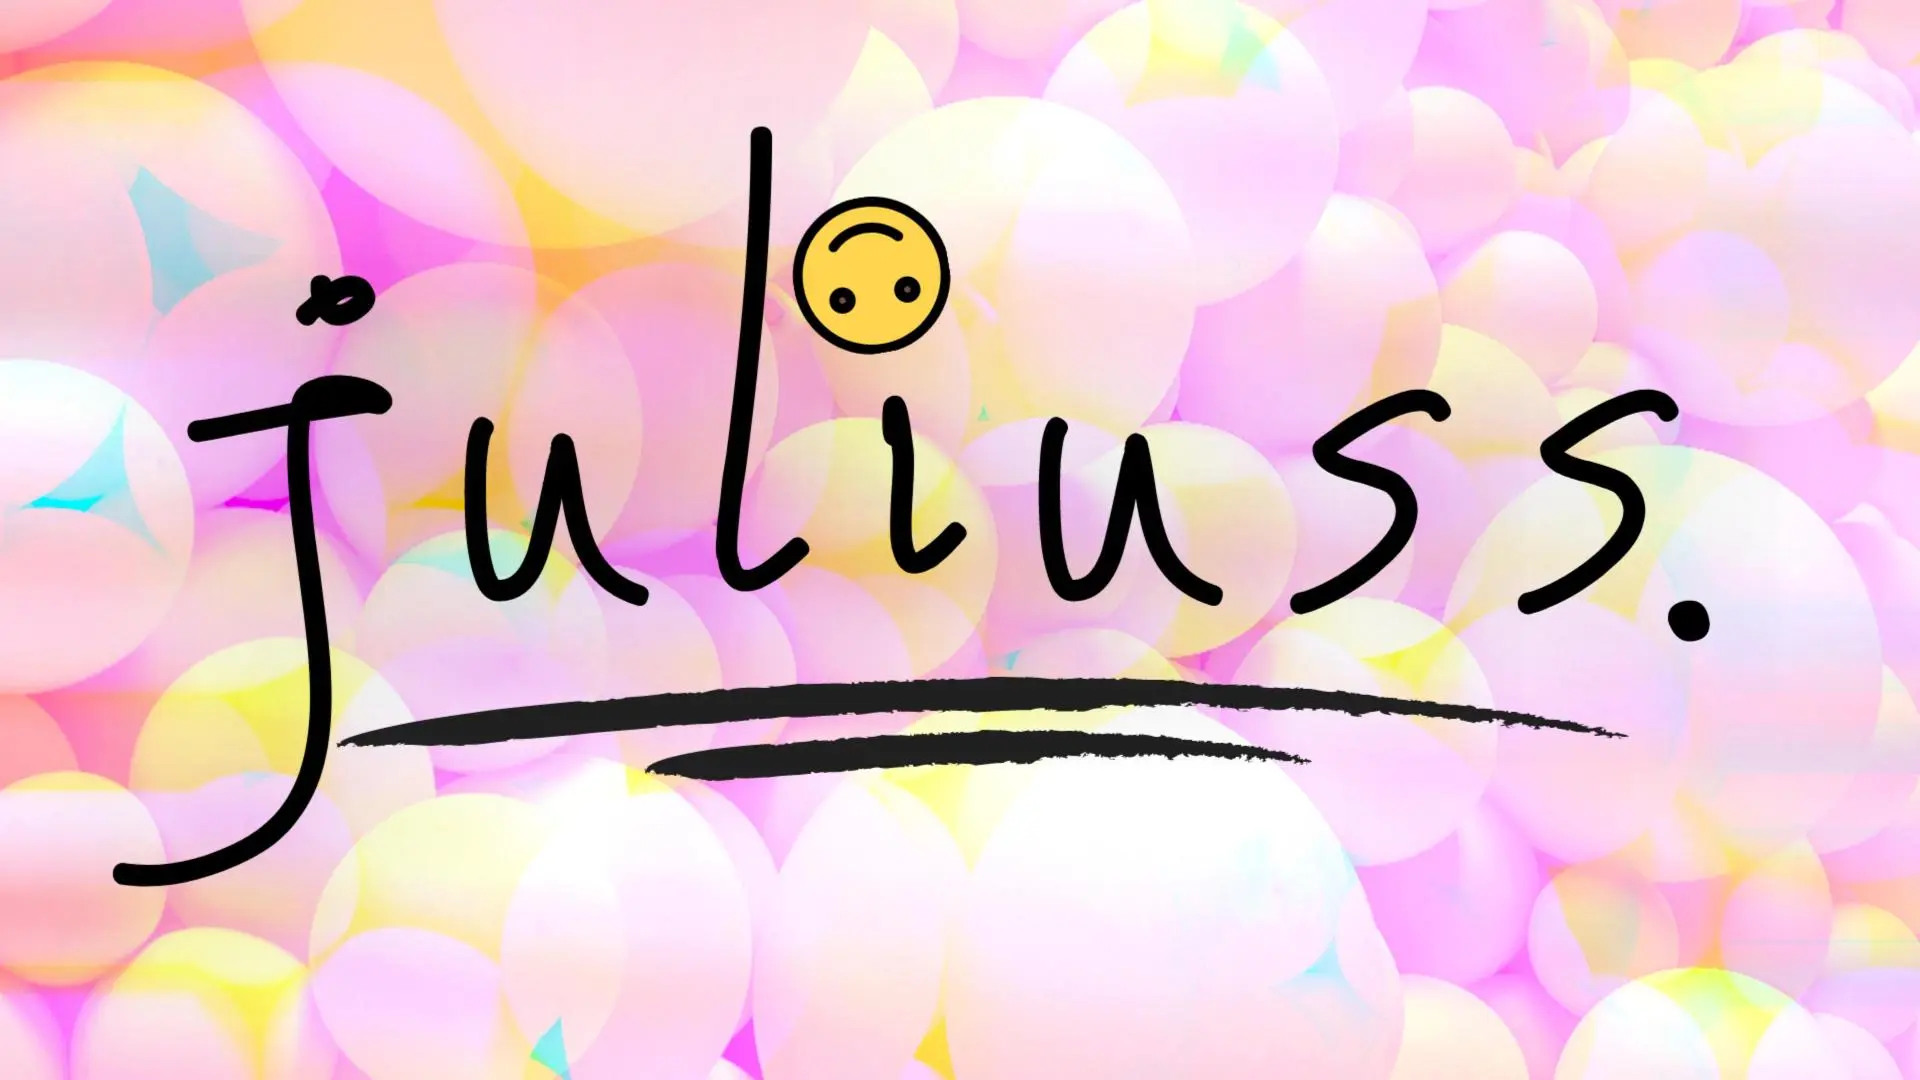 Juliuss: A Mental Health & Illness Docuseries_peliplat